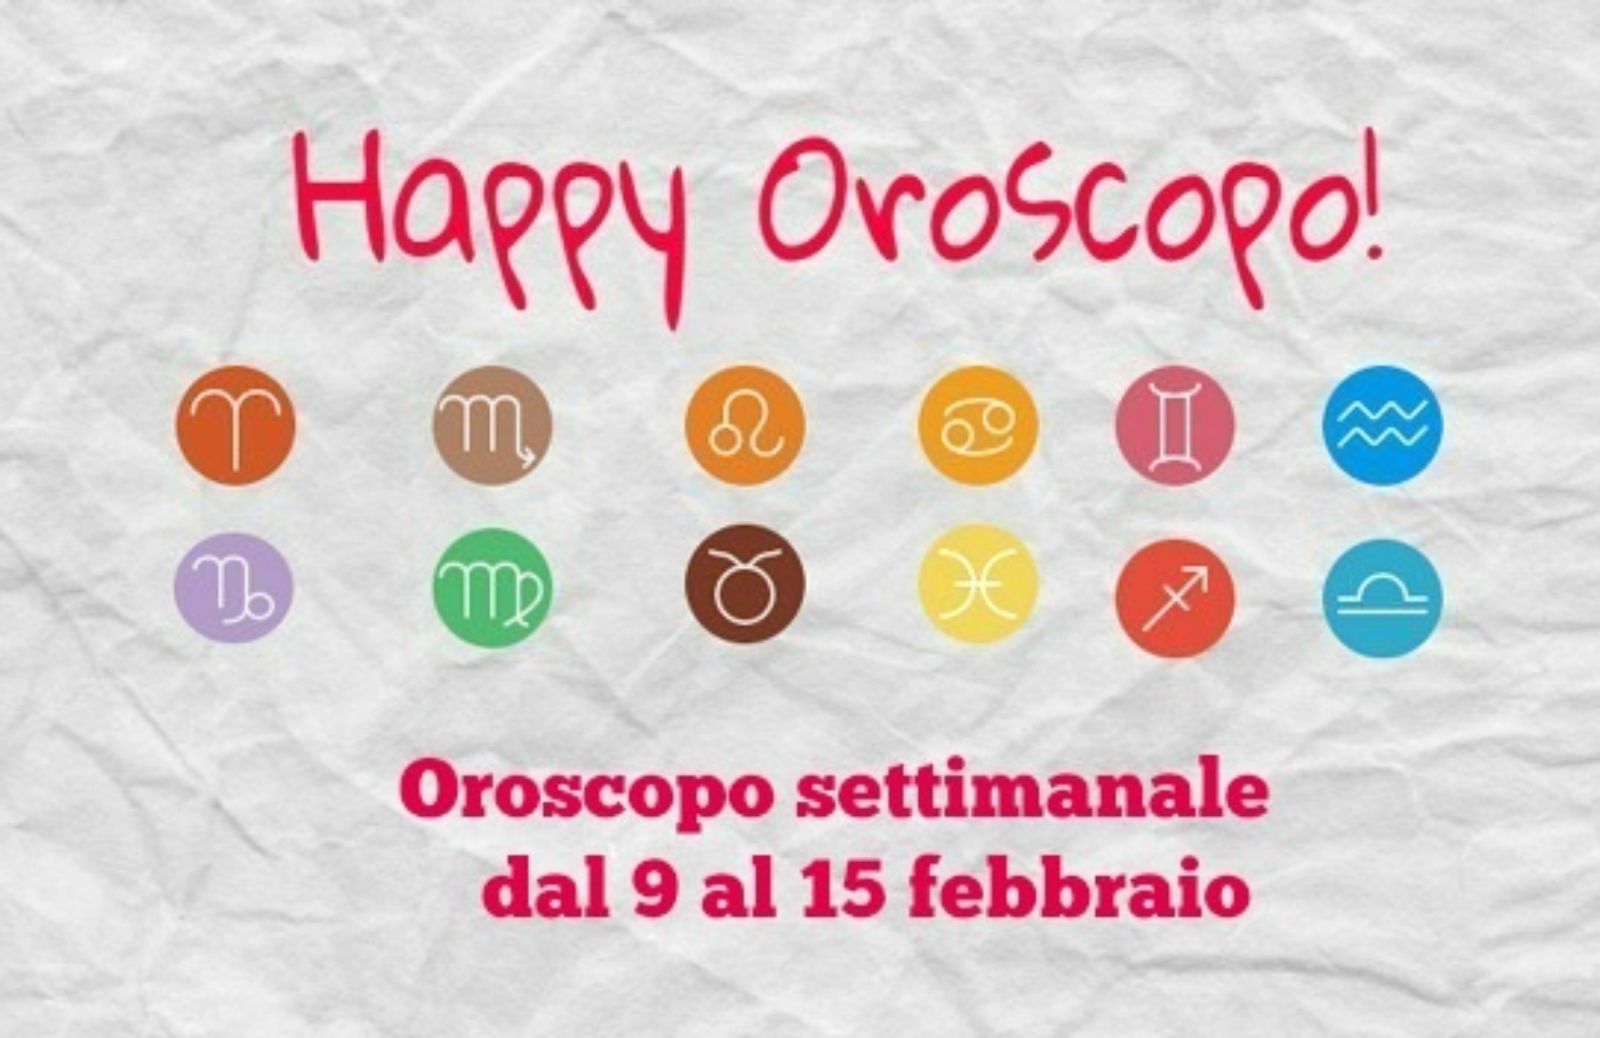 Happy Oroscopo della settimana: cosa dicono le stelle dal 9 al 15 febbraio segno per segno